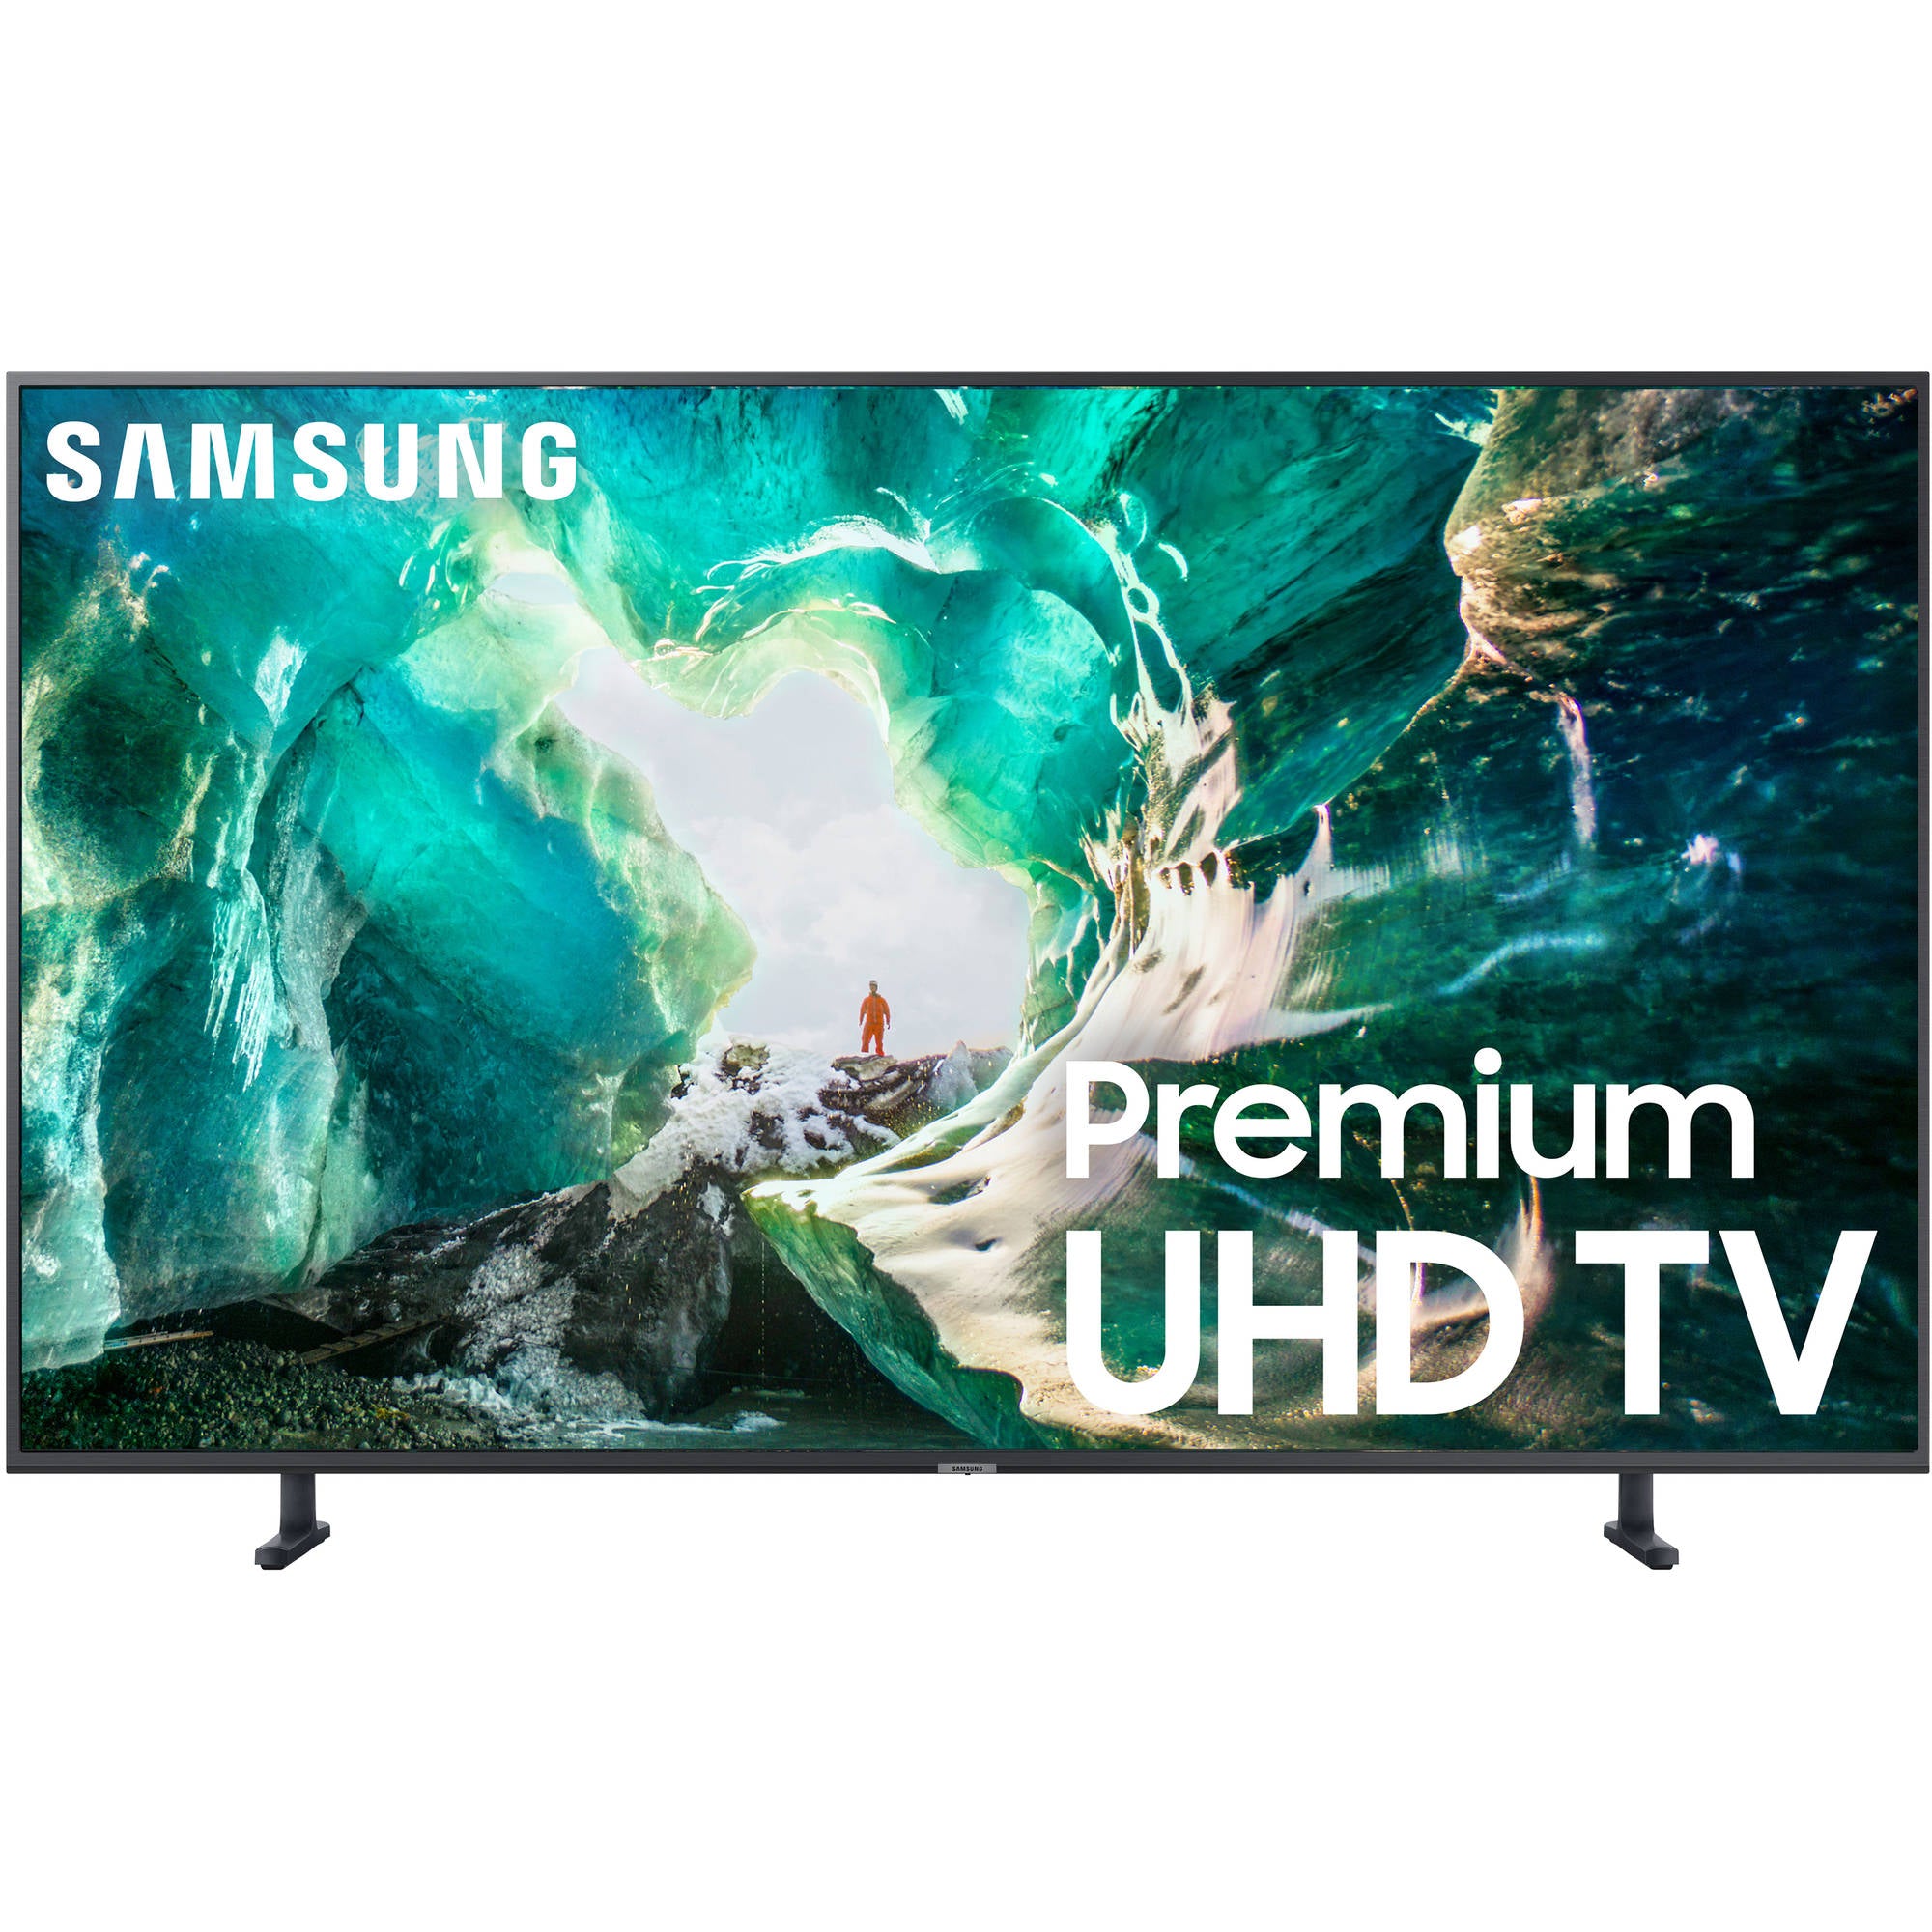 Samsung UN75RU8000/FXZC 75-Inch Premium Uhd 4K TV Ru8000 (2019)